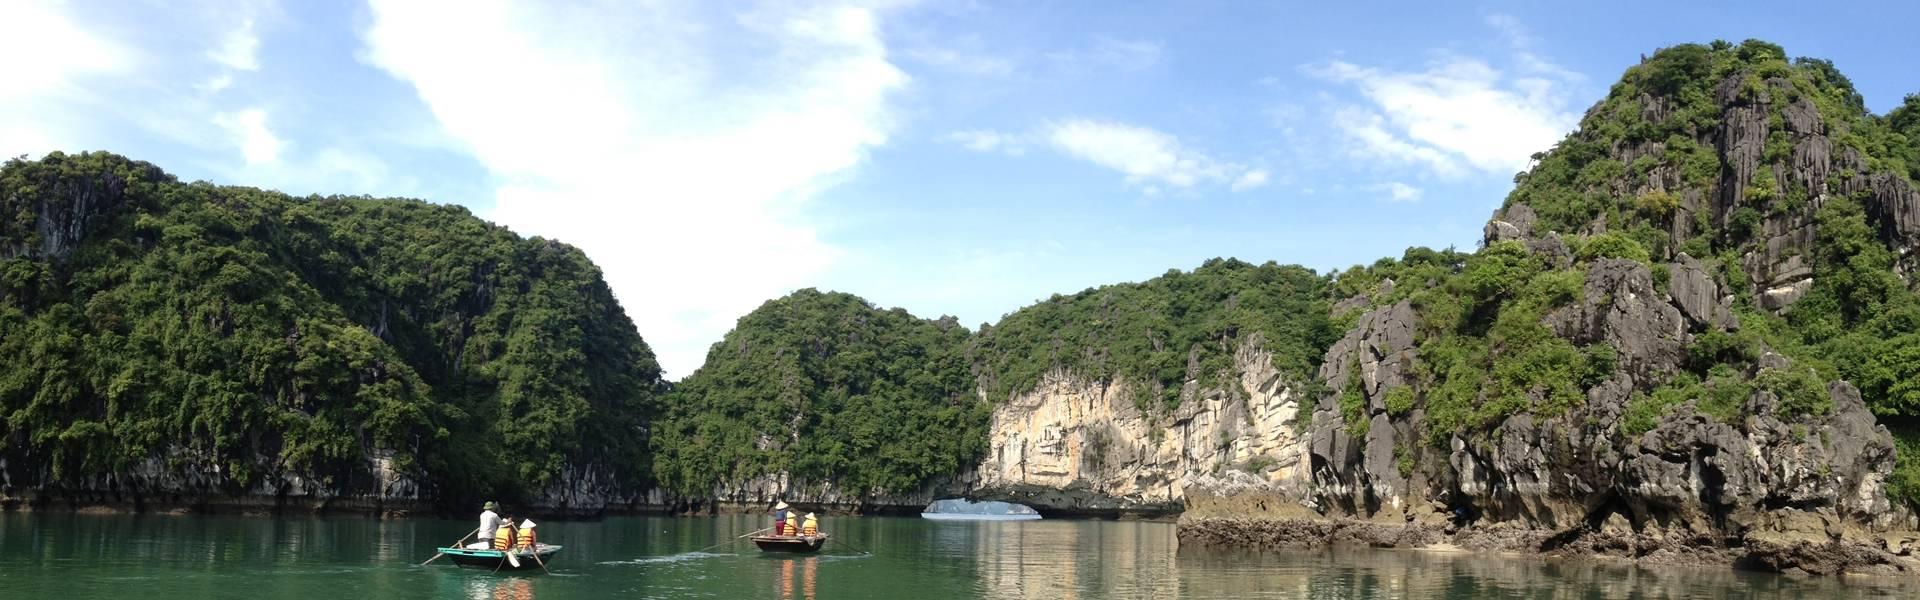 Baie d'Halong : 5 conseils avant de partir en voyage